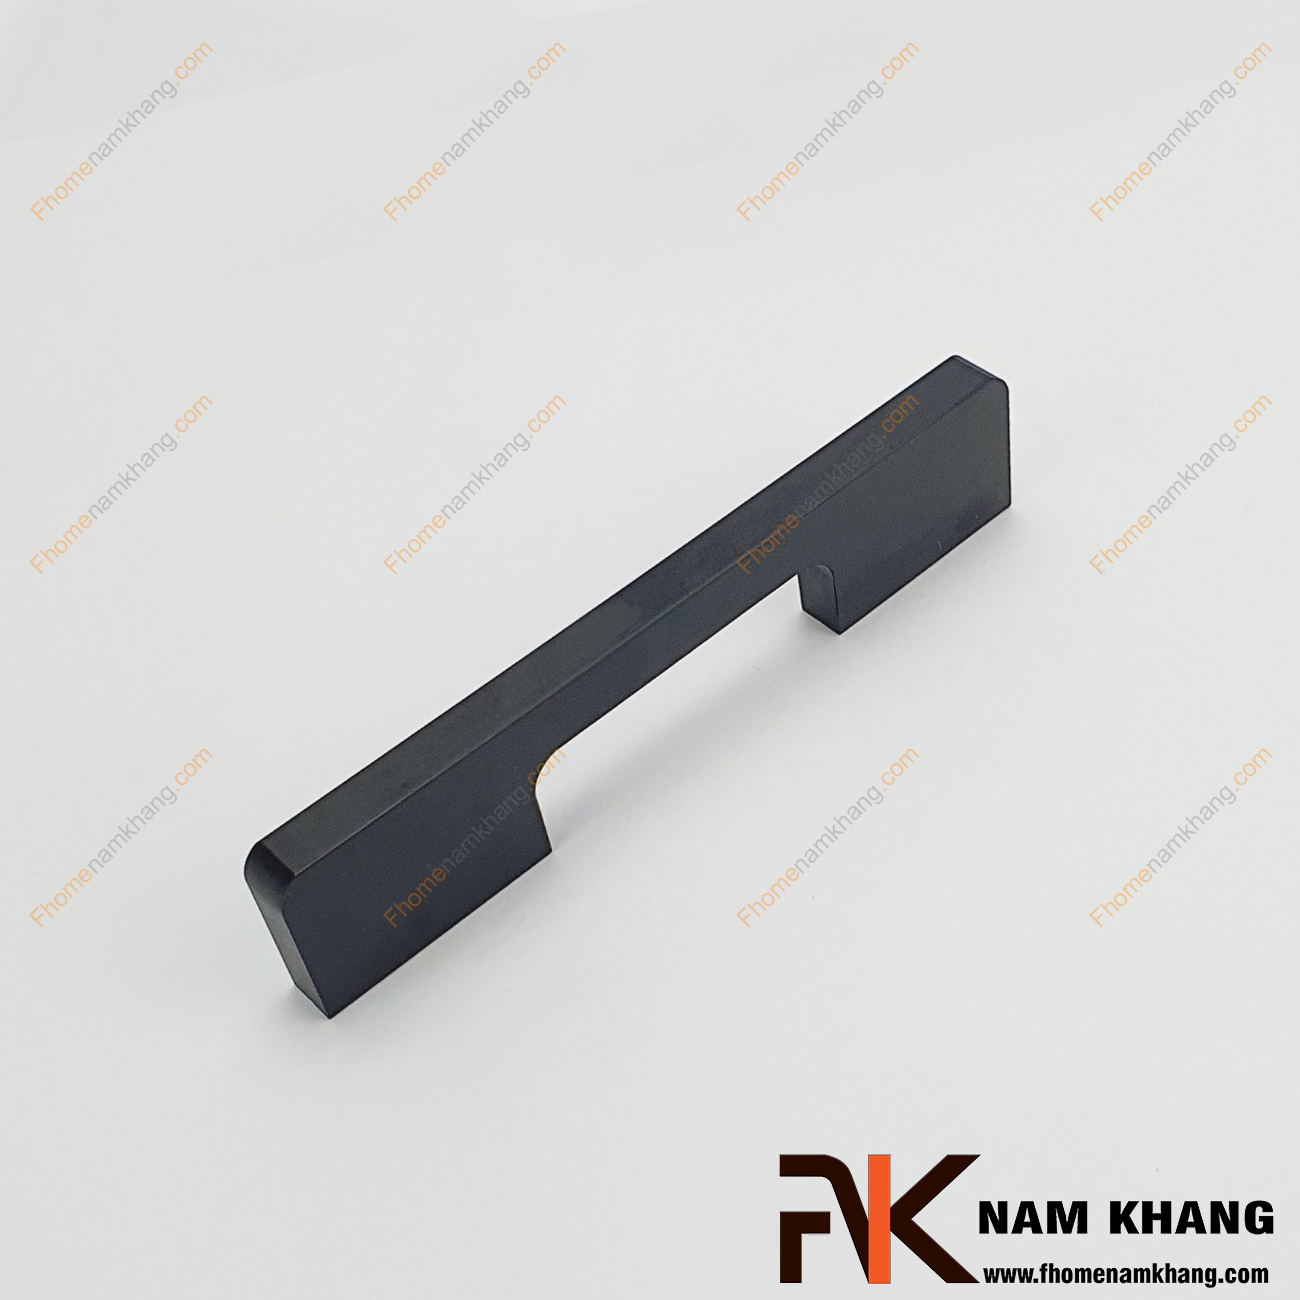 Tay nắm tủ dạng thanh màu đen mờ NK235L-D là một dòng tay nắm tủ theo bộ với nhiều kích thước được sử dụng trên một hoặc nhiều loại phong cách tủ khác nhau tùy nhu cầu thiết kế.